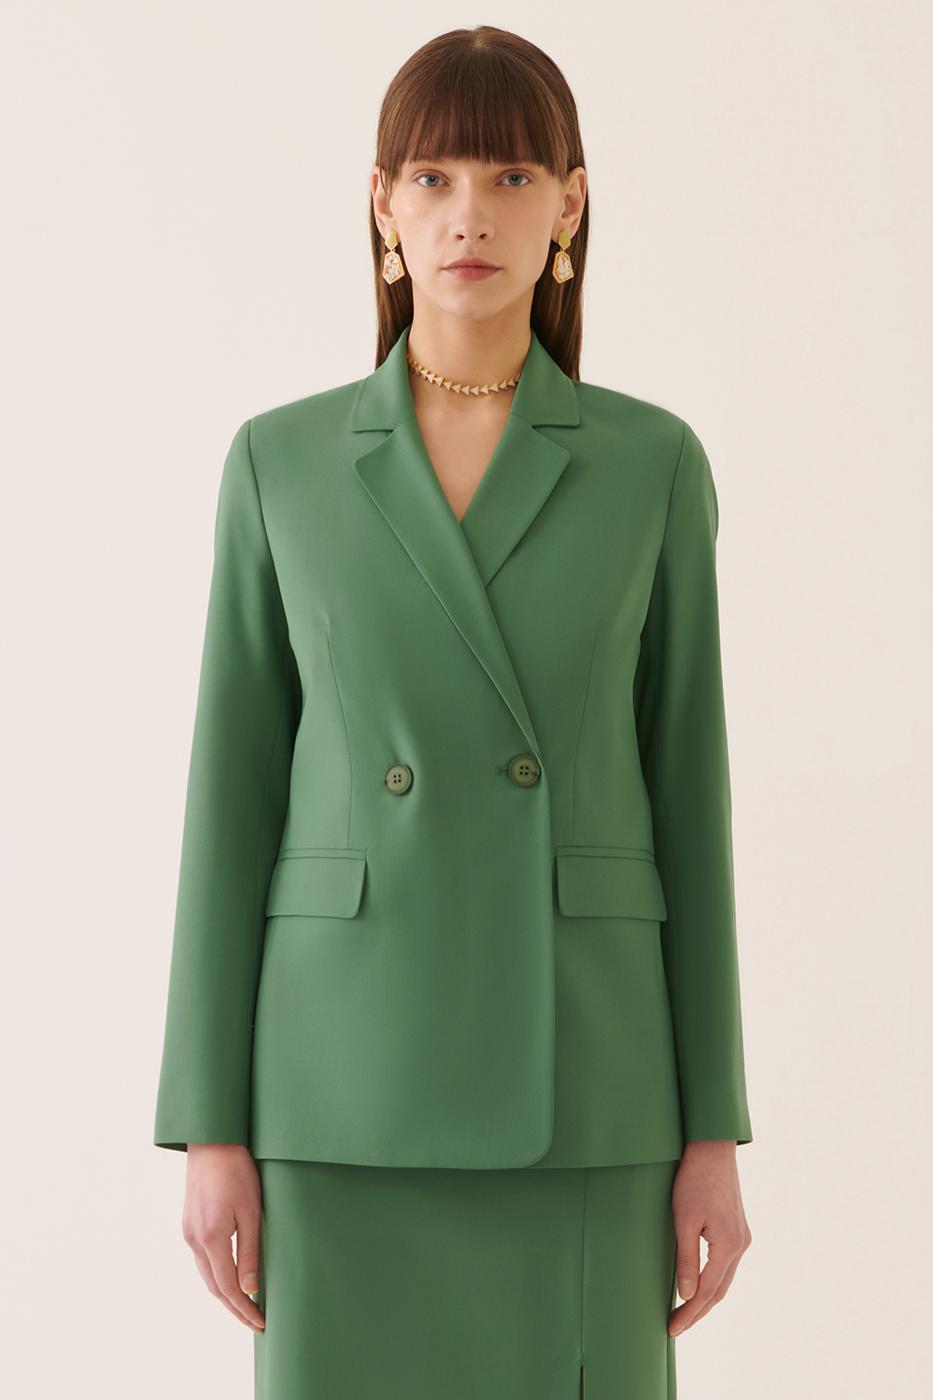 Bayan PALMİYE YEŞİLİ Aidas Regular Fit Erkek Yaka Standart Boy Palmiye Yeşili Renk Kadın Ceket